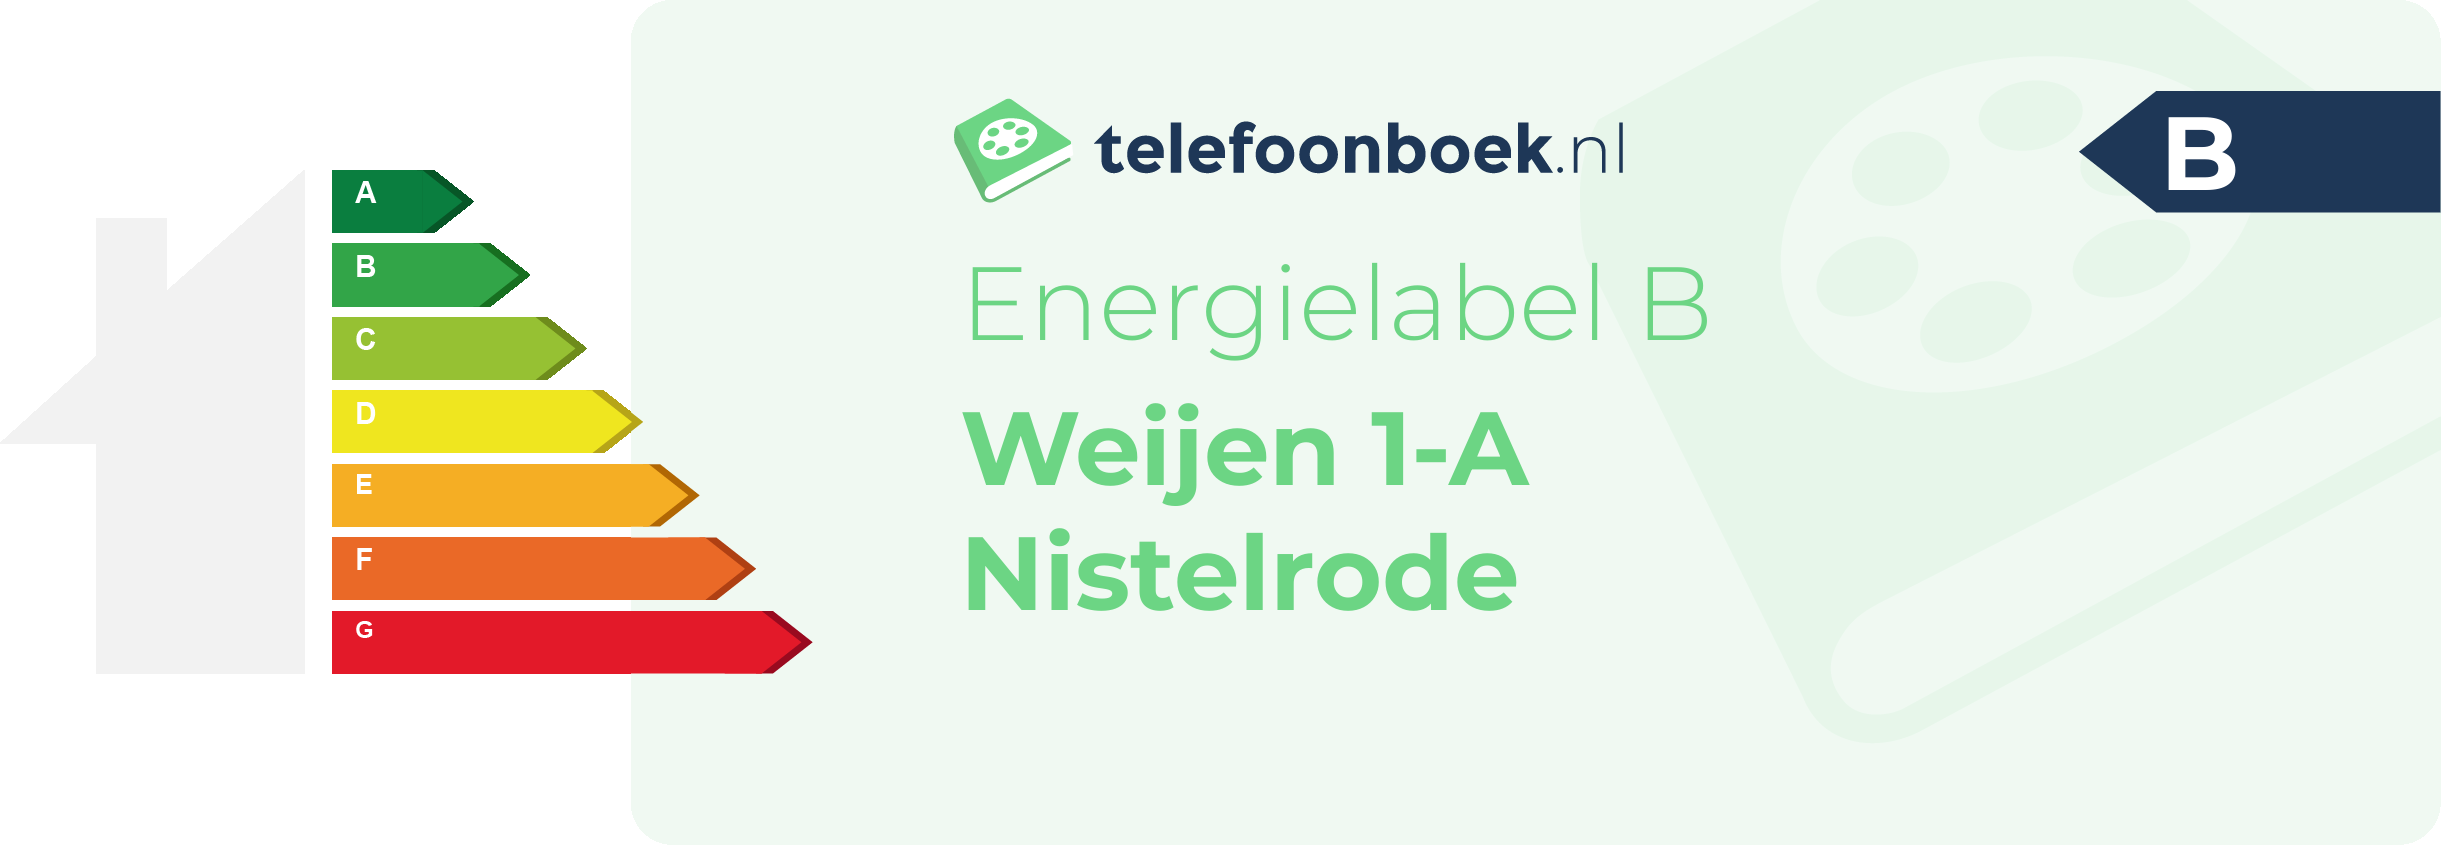 Energielabel Weijen 1-A Nistelrode